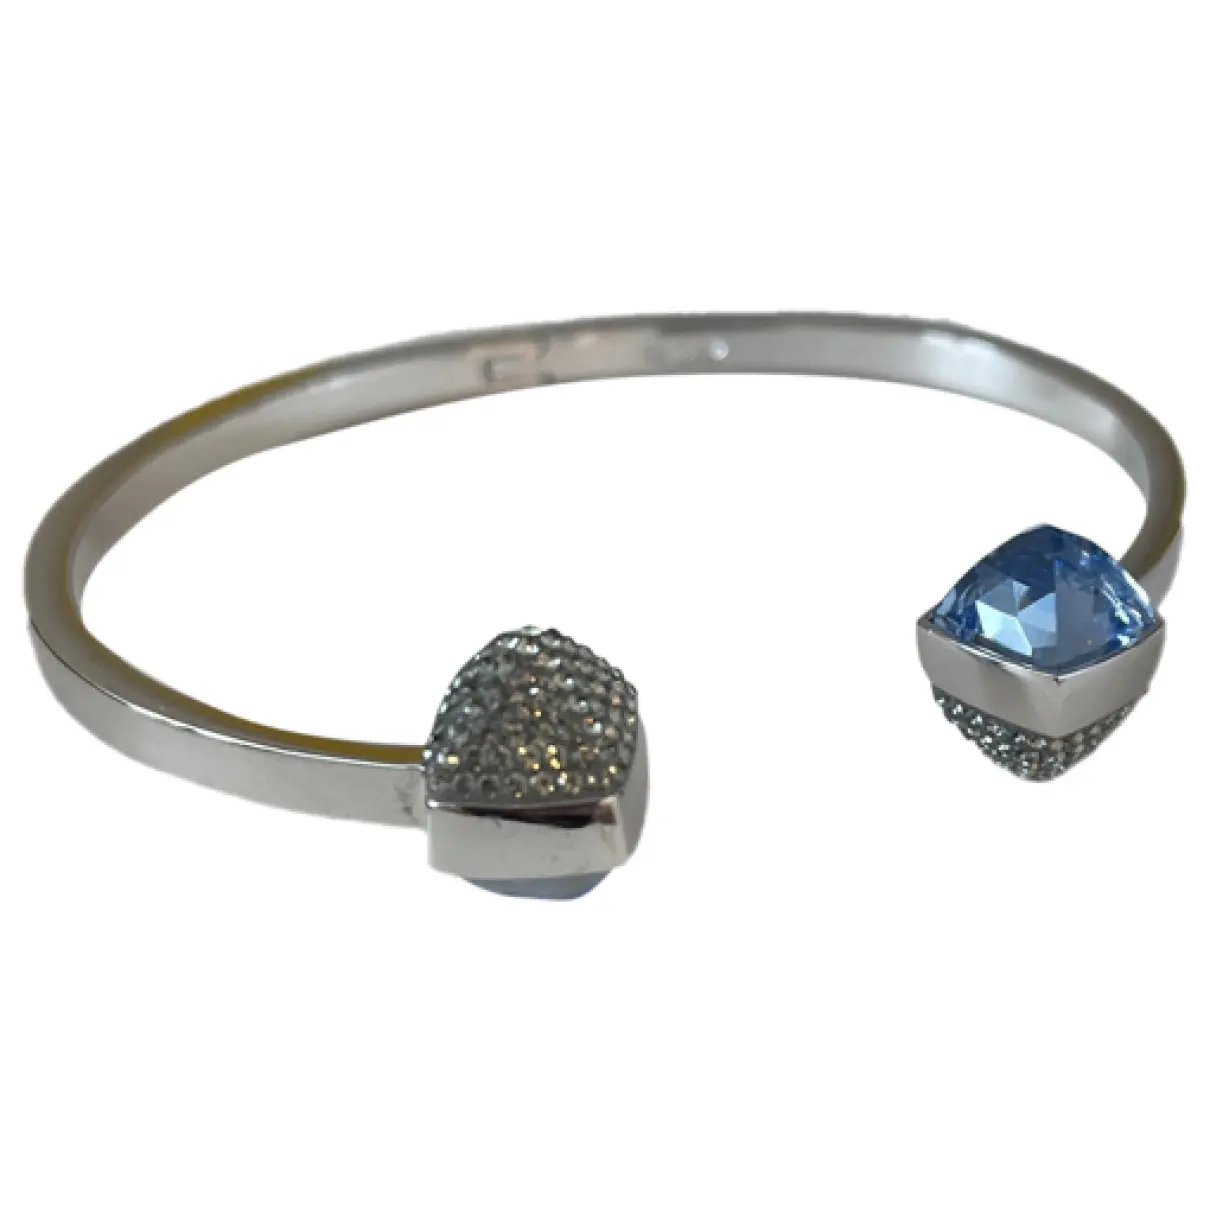 Slake silver bracelet